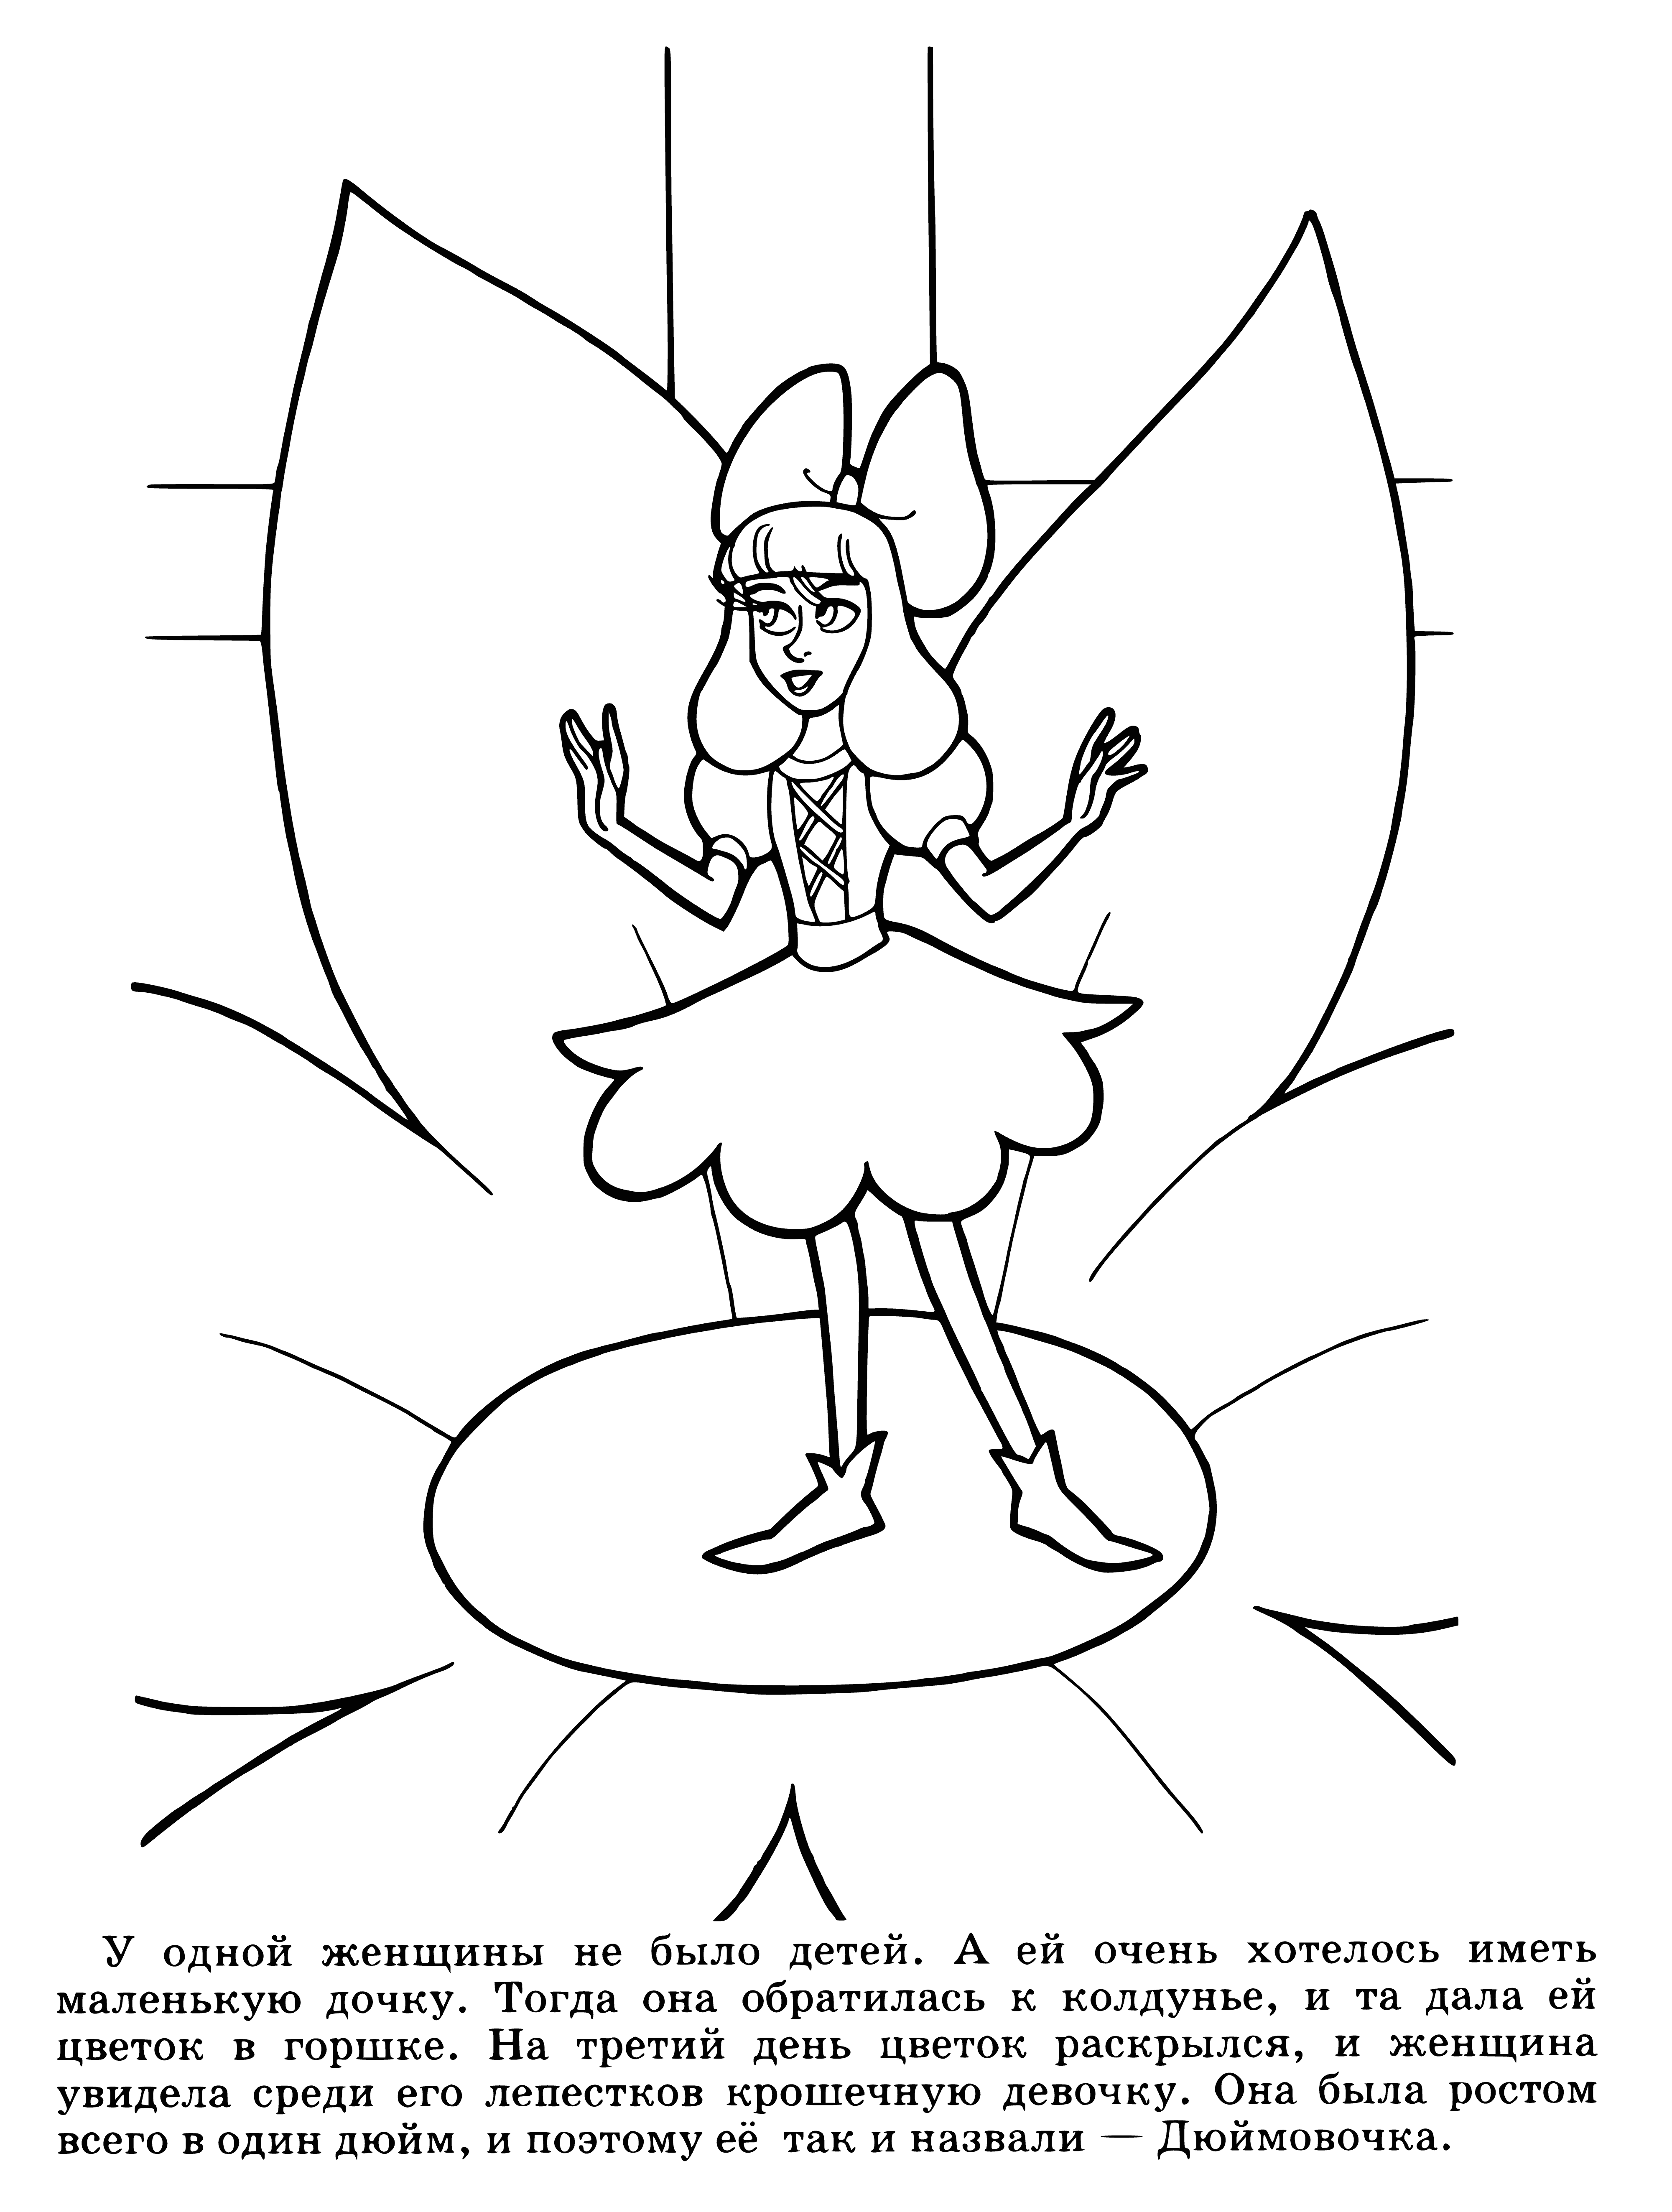 Thumbelina coloring page